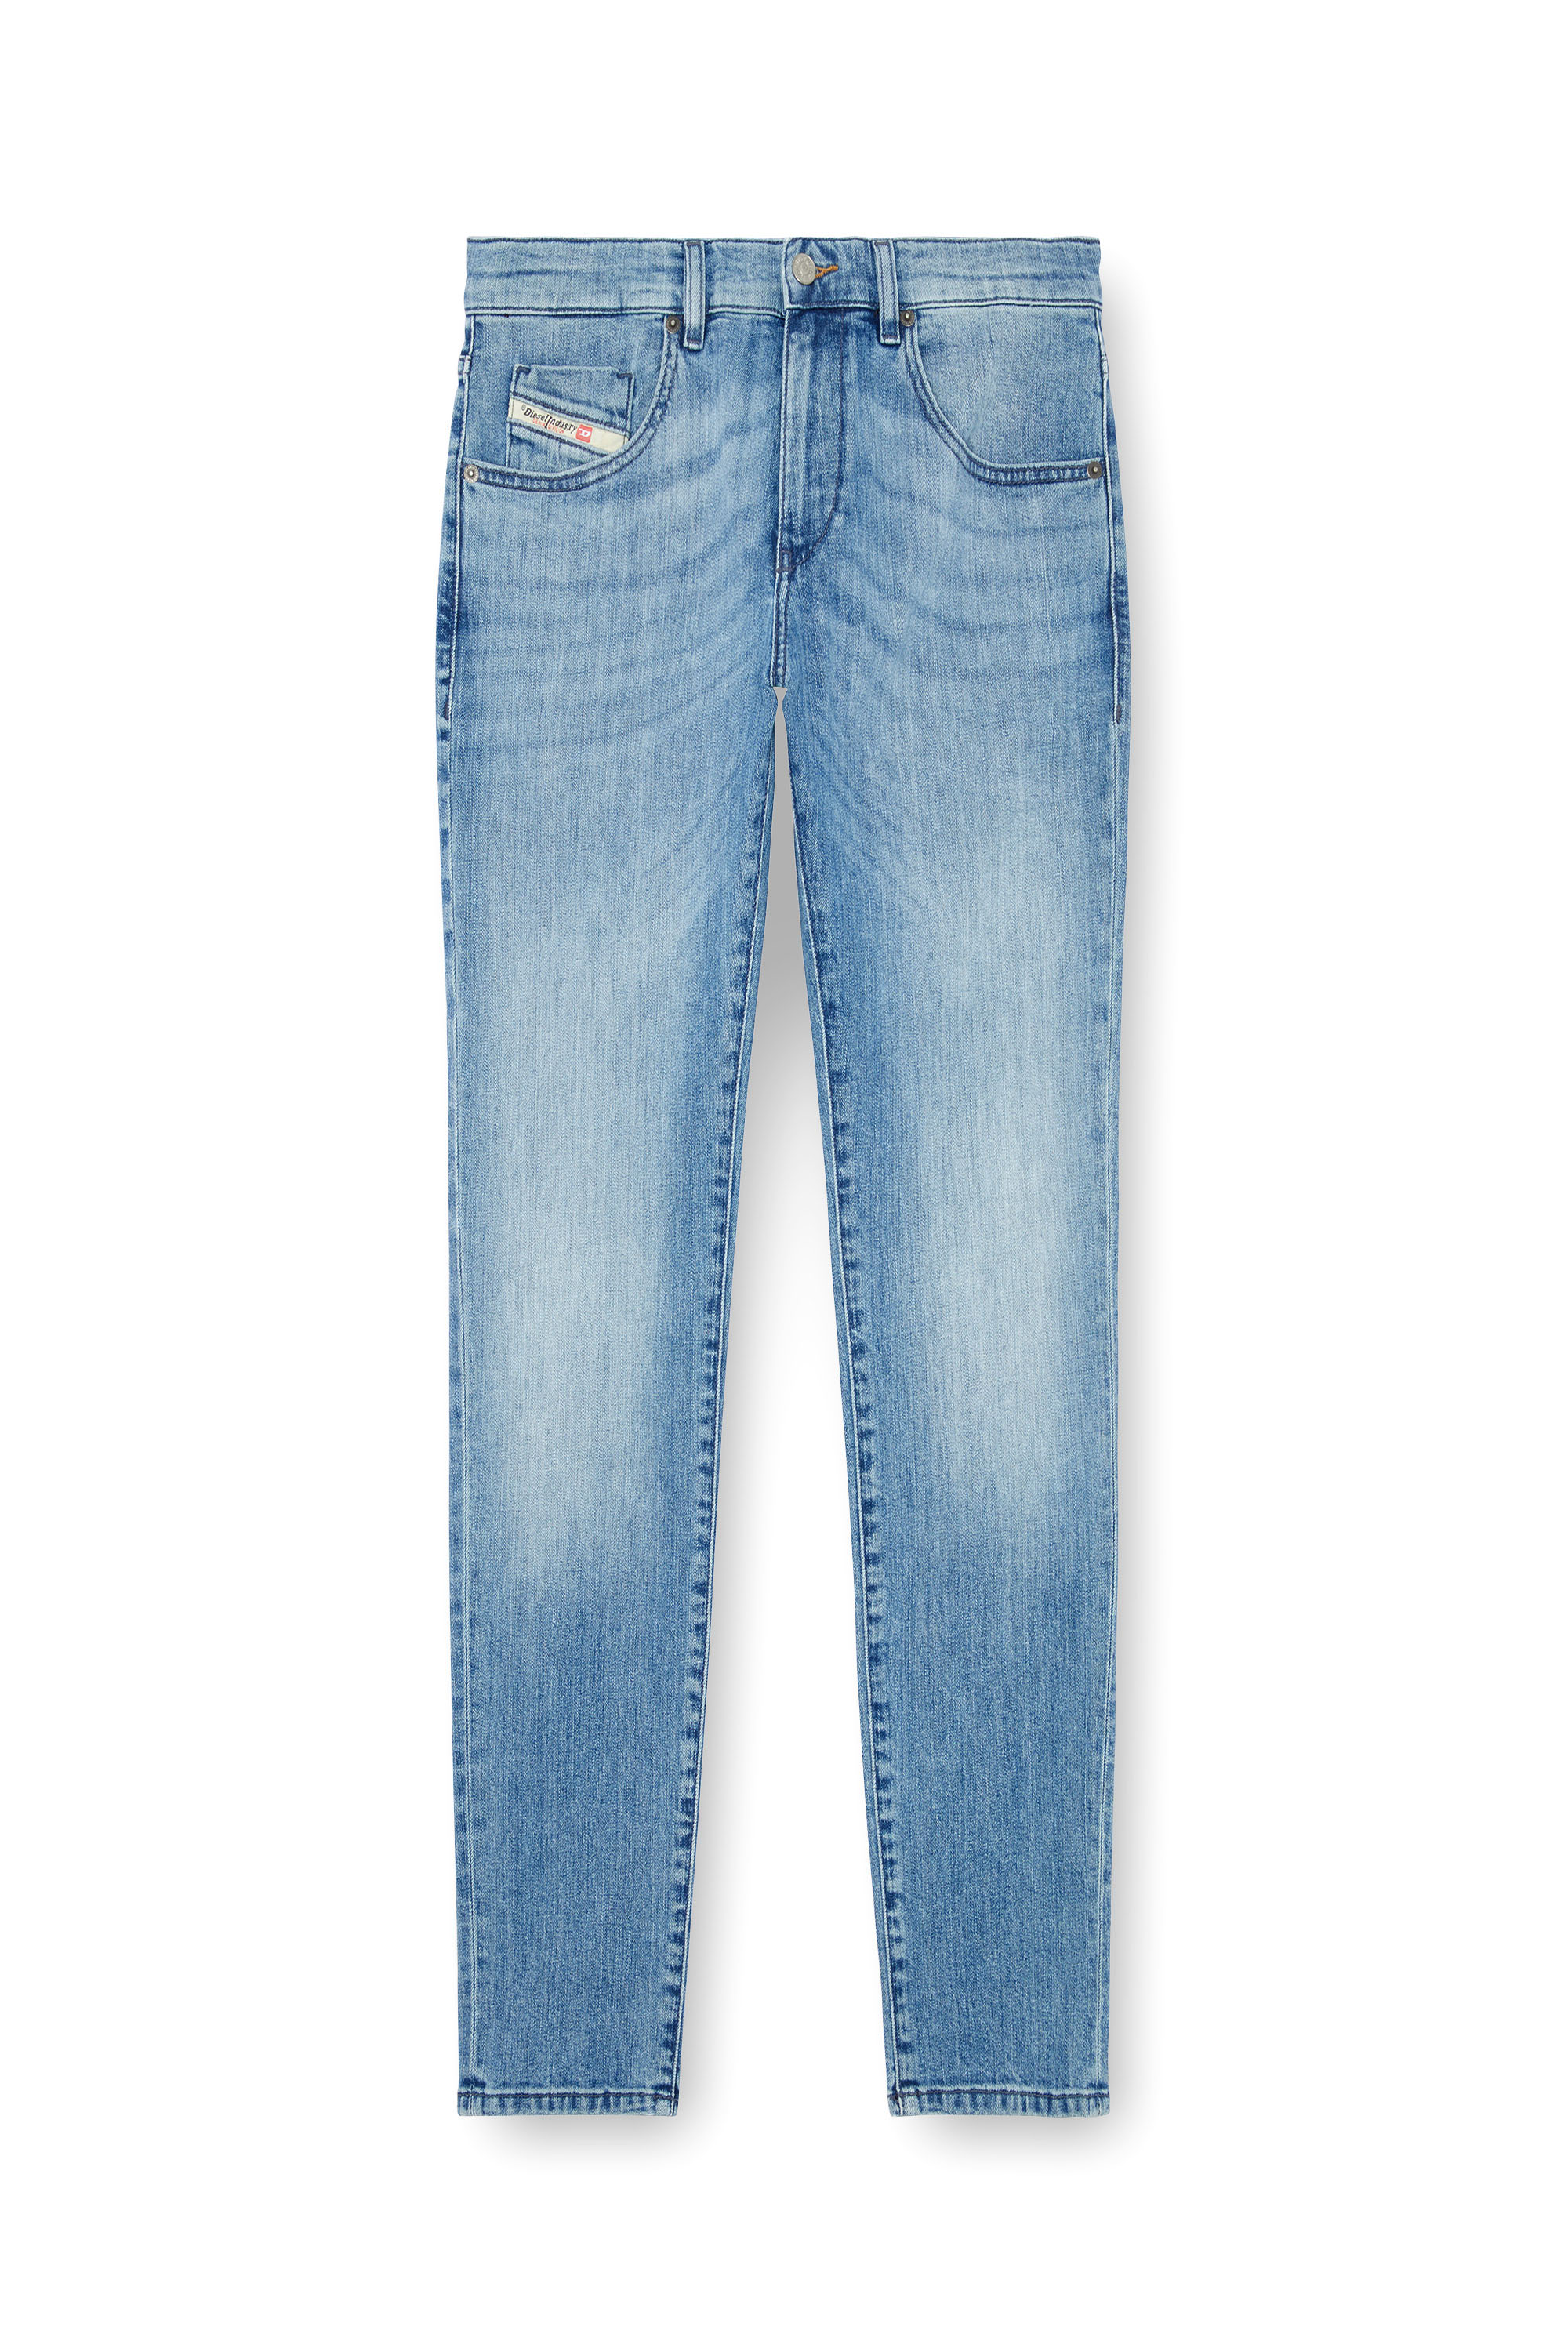 Diesel - Slim Jeans 2019 D-Strukt 0GRDI, Hombre Slim Jeans - 2019 D-Strukt in Azul marino - Image 3